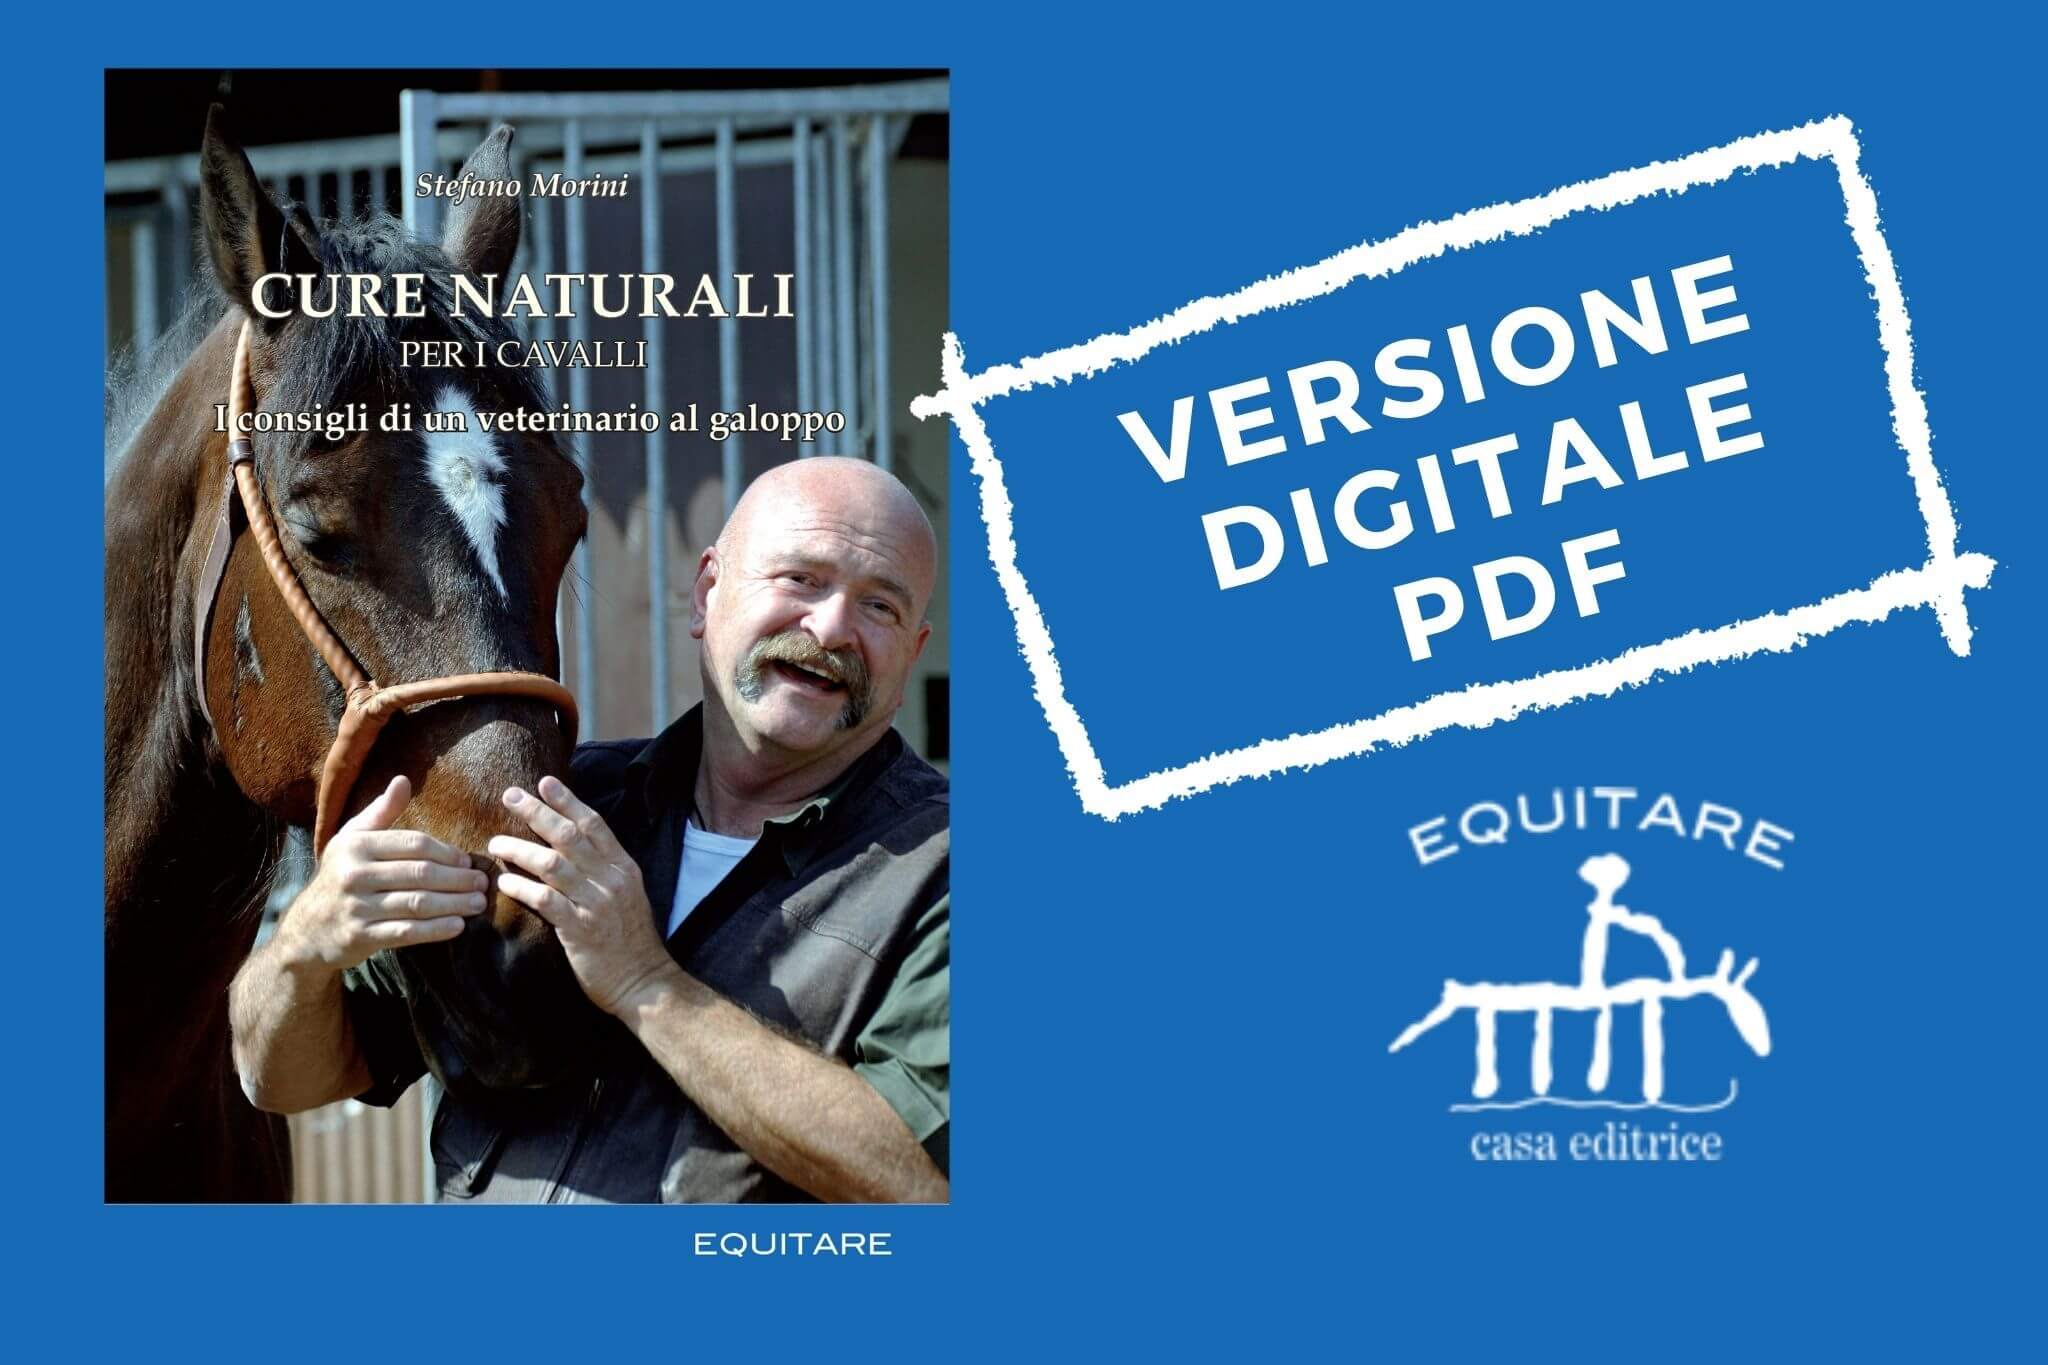 "Cure naturali per i cavalli" in digital edition